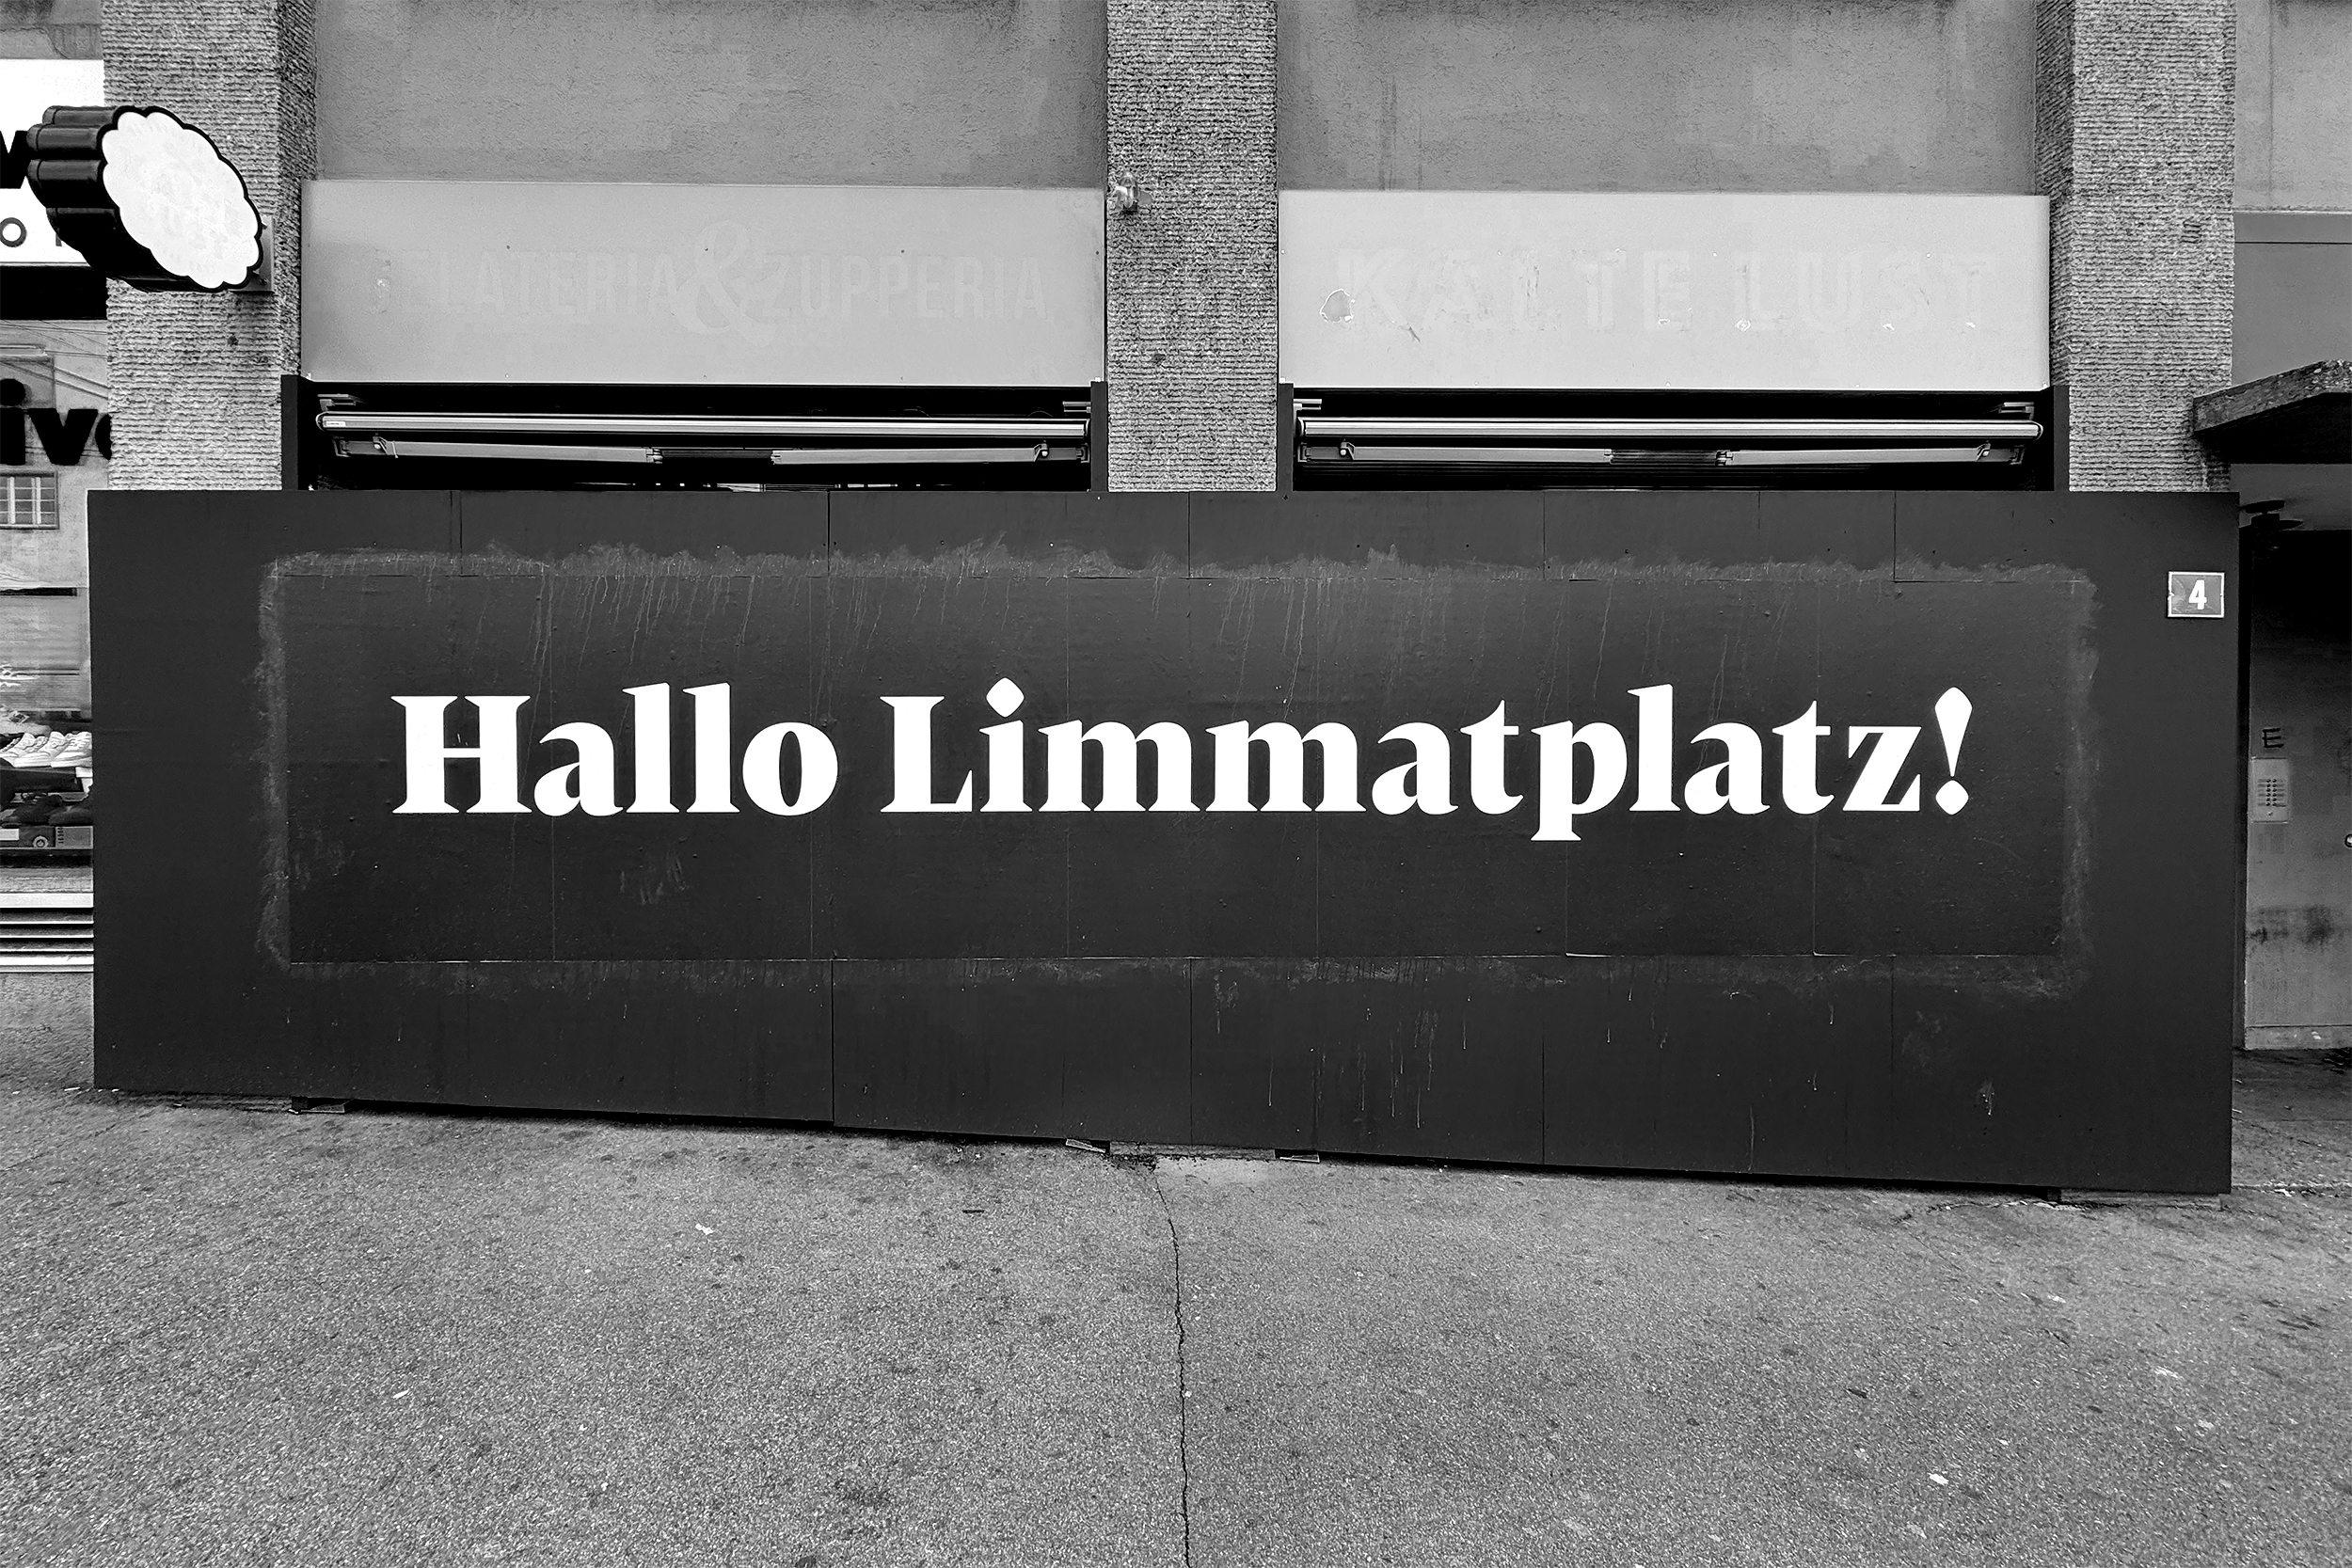 A temporary sign reading "Hallo Limmatplatz!" at, well, Limmatplatz in Zurich.